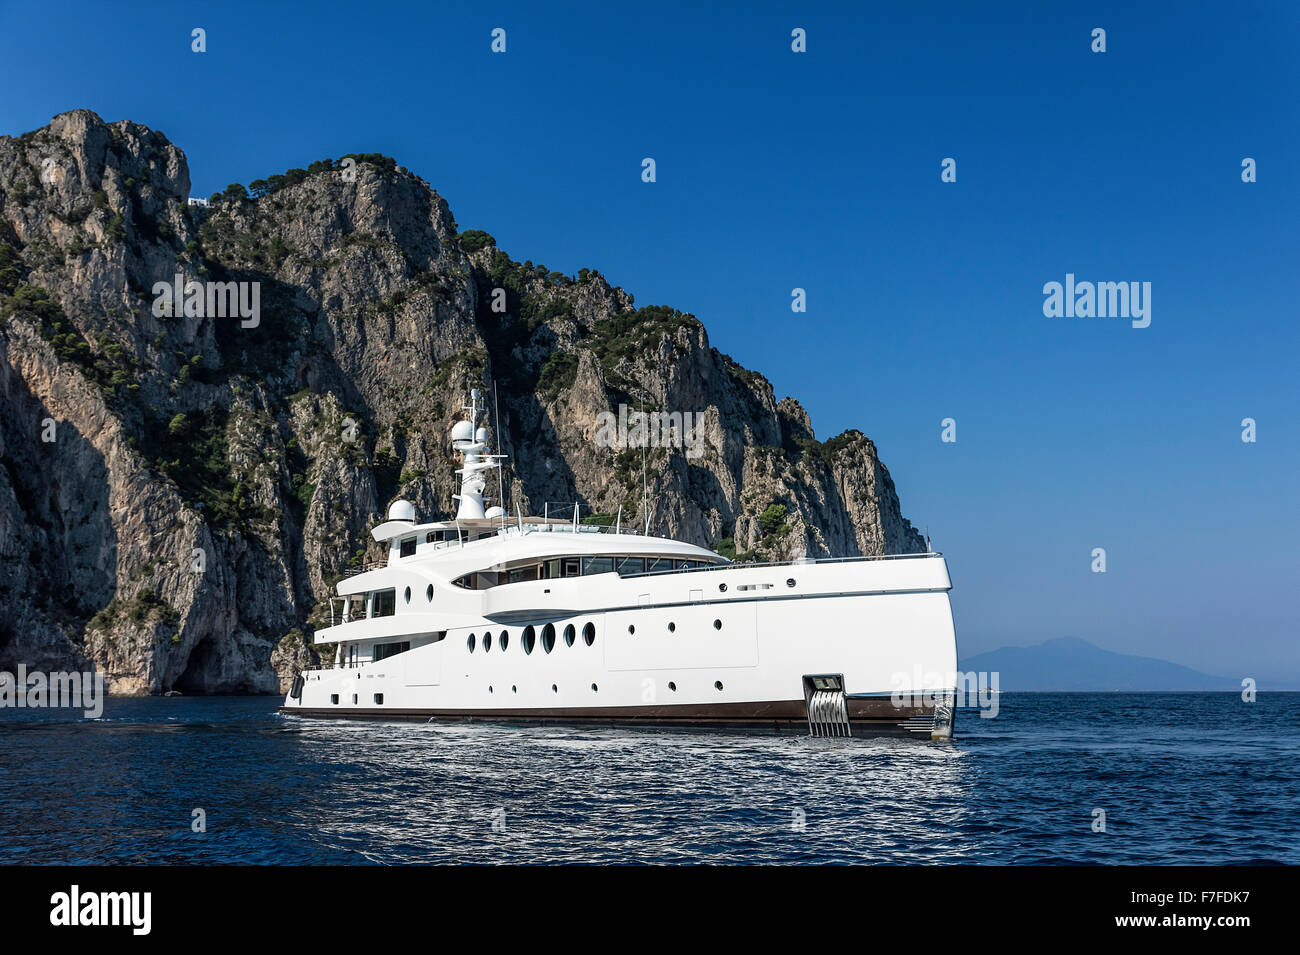 Bateau yacht ancré au large de la côte de Capri, l'île de Capri, Italie Banque D'Images